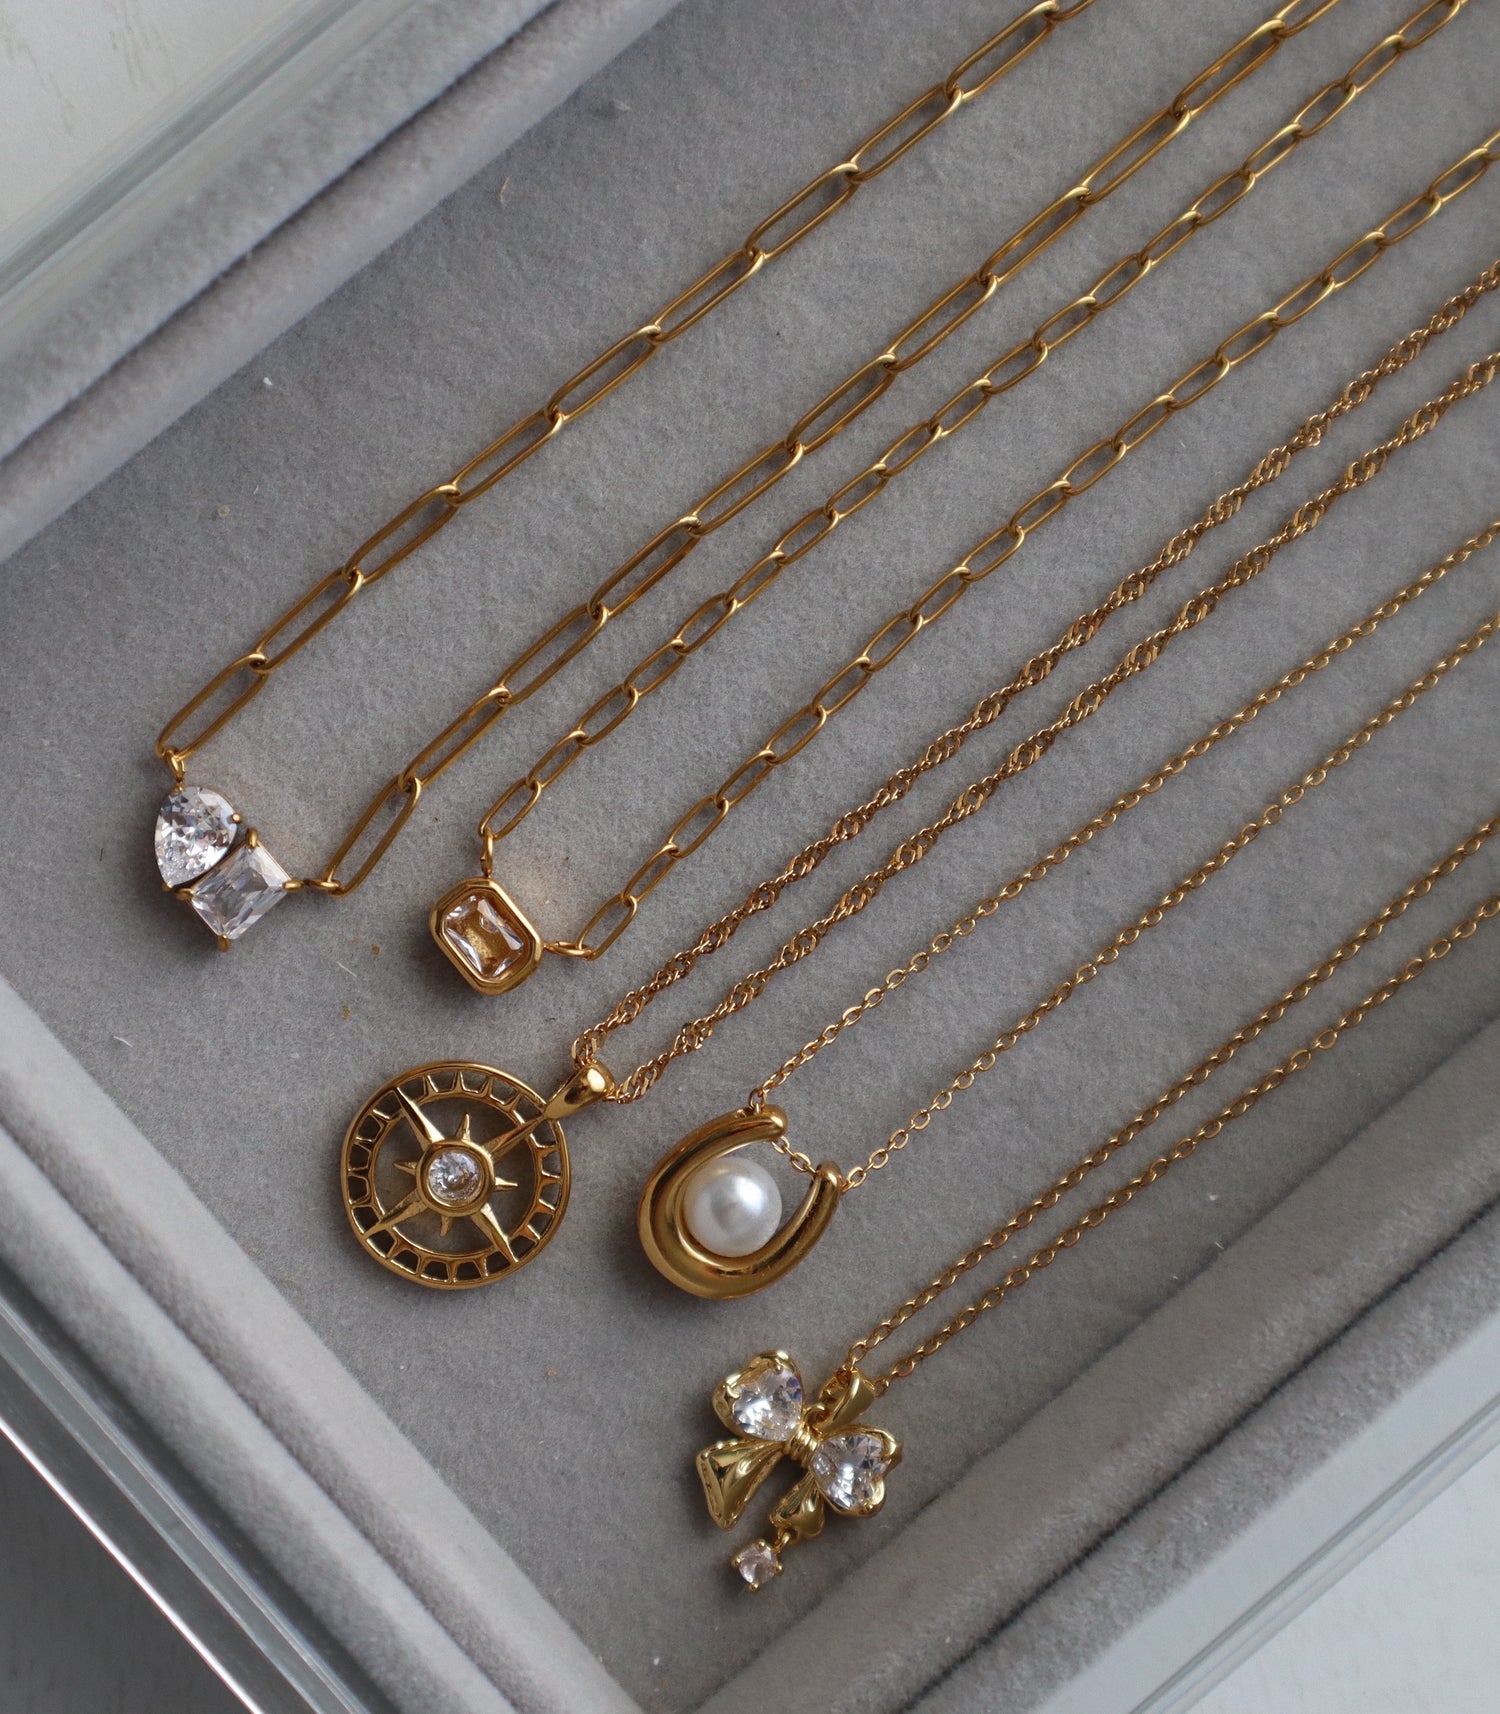 NECKLACES - JESSA JEWELRY | GOLD JEWELRY; earrings, rings, necklaces, jewelry storage; gold jewelry for everyday wear, minimalistic jewelry